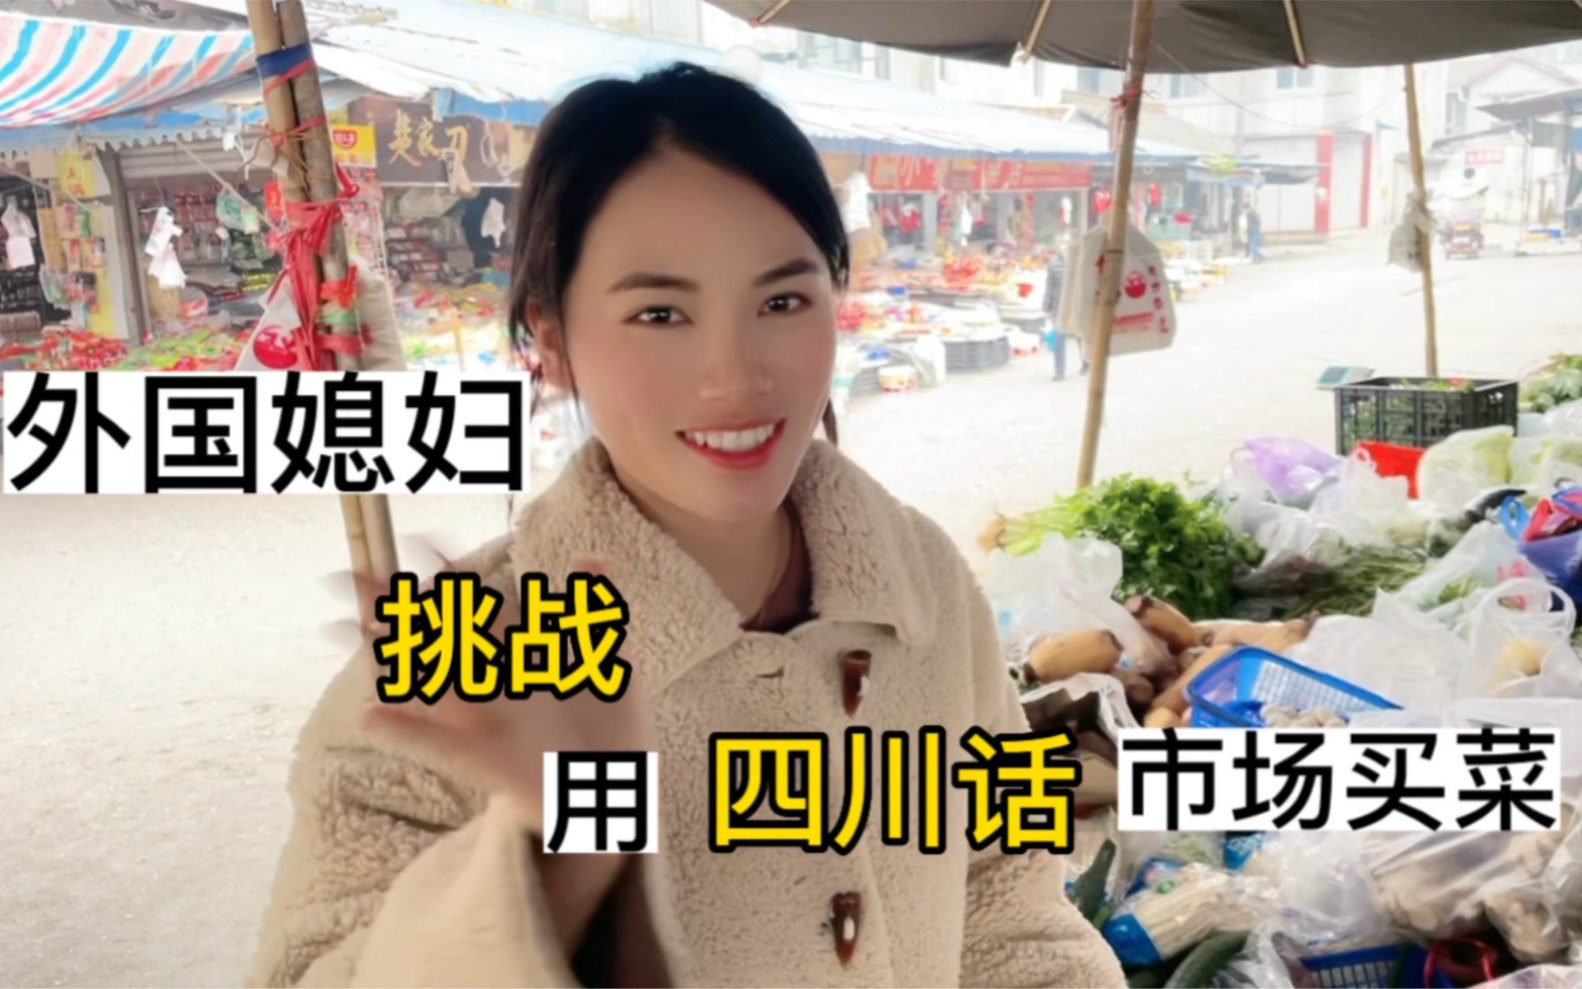 外国媳妇第一次挑战用四川话在菜市场没菜，这下尴尬了